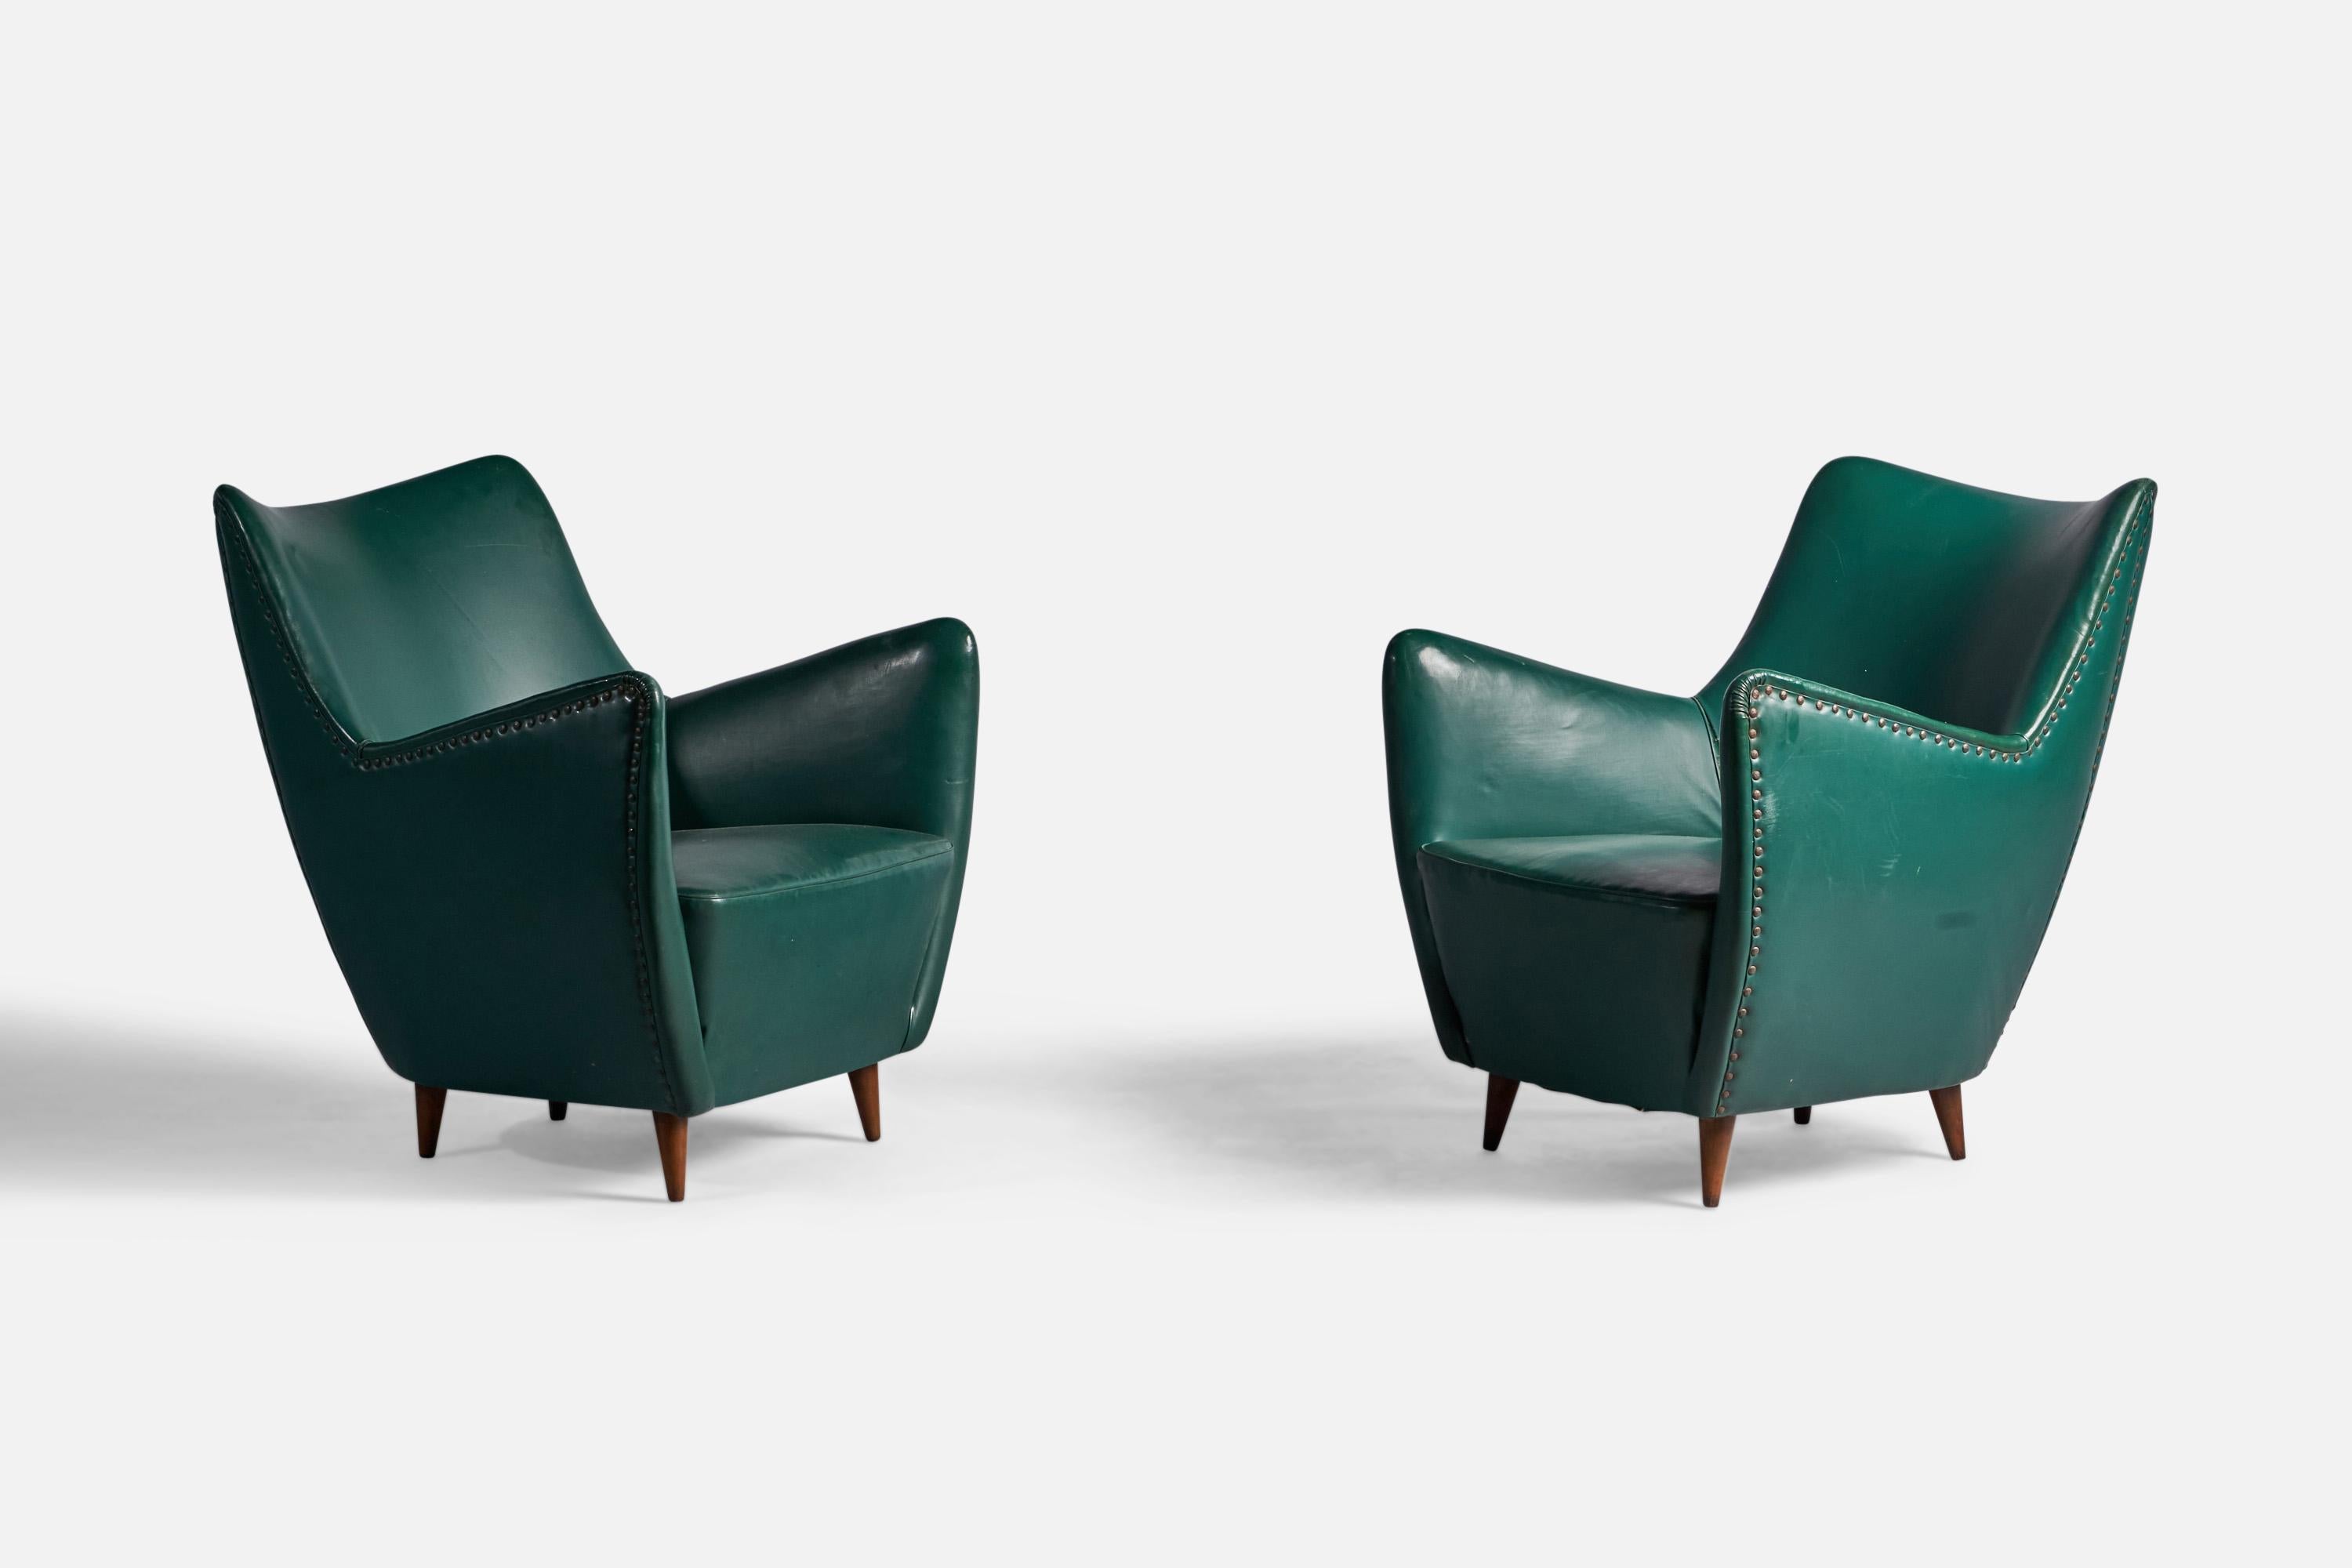 Ein Paar Sessel aus grünem Vinyl, Holz und Messing, entworfen von Guglielmo Veronesi und hergestellt von ISA Bergamo, Italien, 1950er Jahre.

Sitzhöhe: 16,5